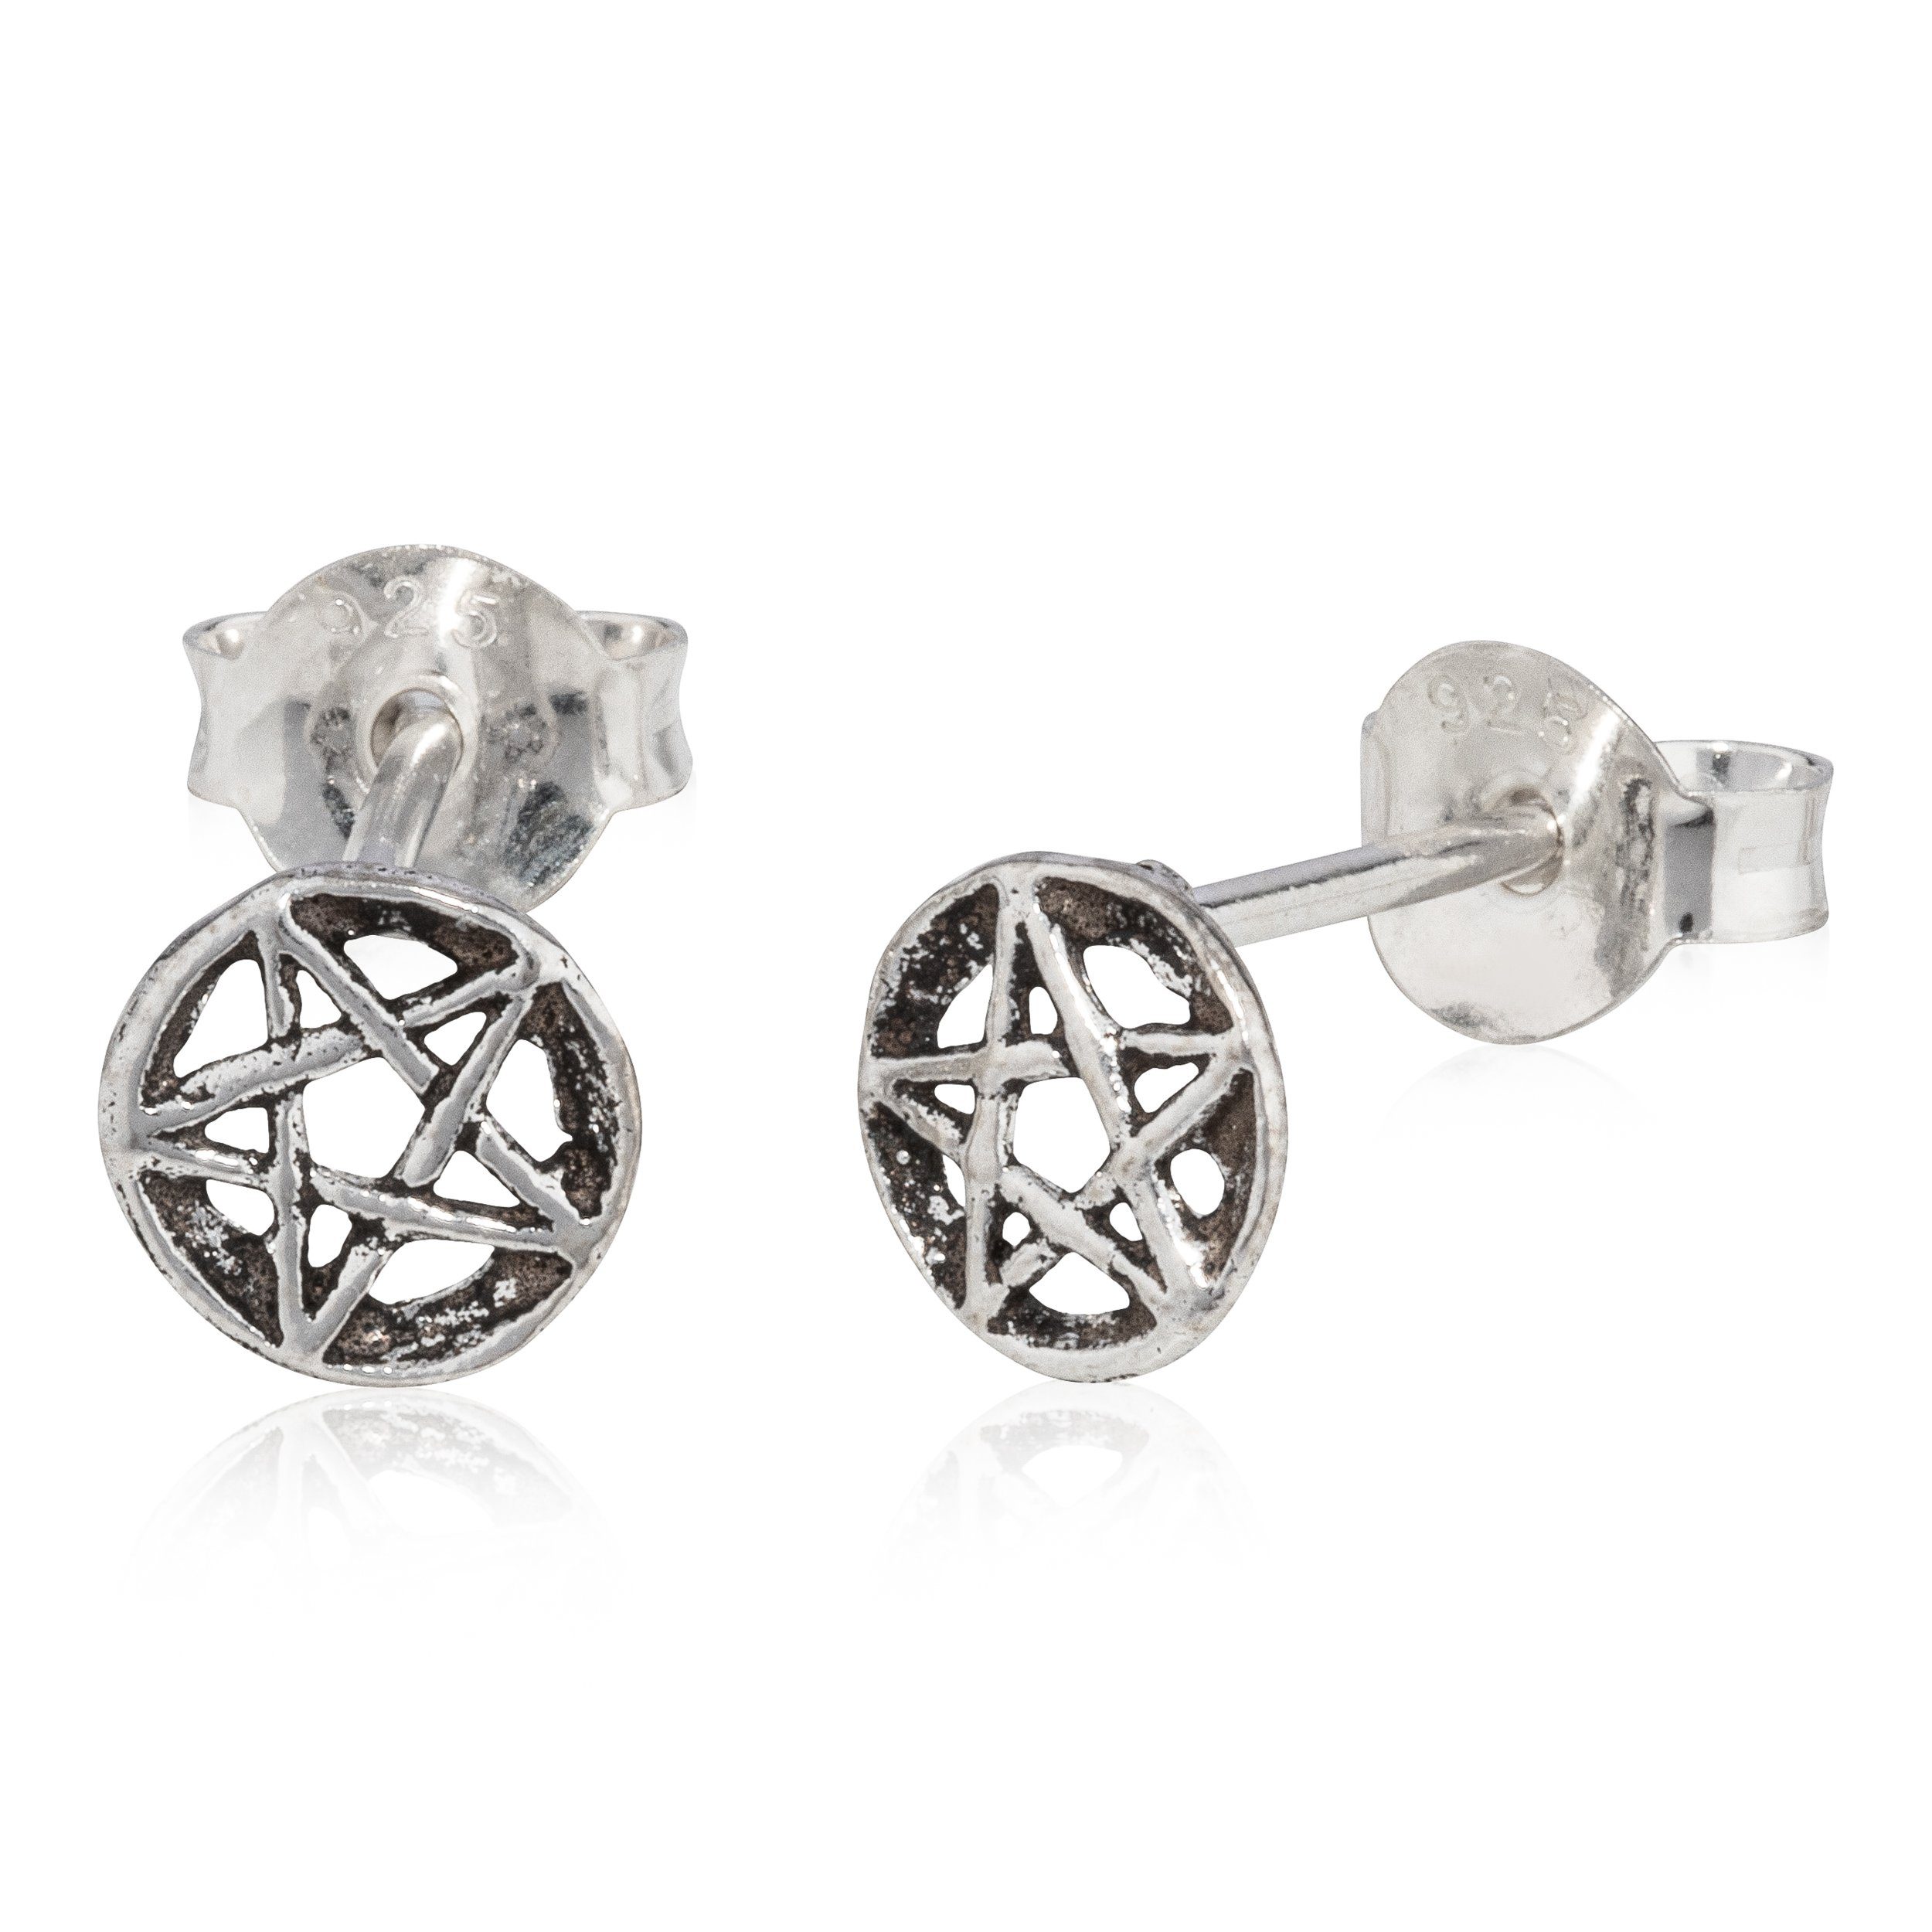 NKlaus Paar Ohrstecker Paar Pentagramm Ohrring Antik Oxidiert 925 Silber